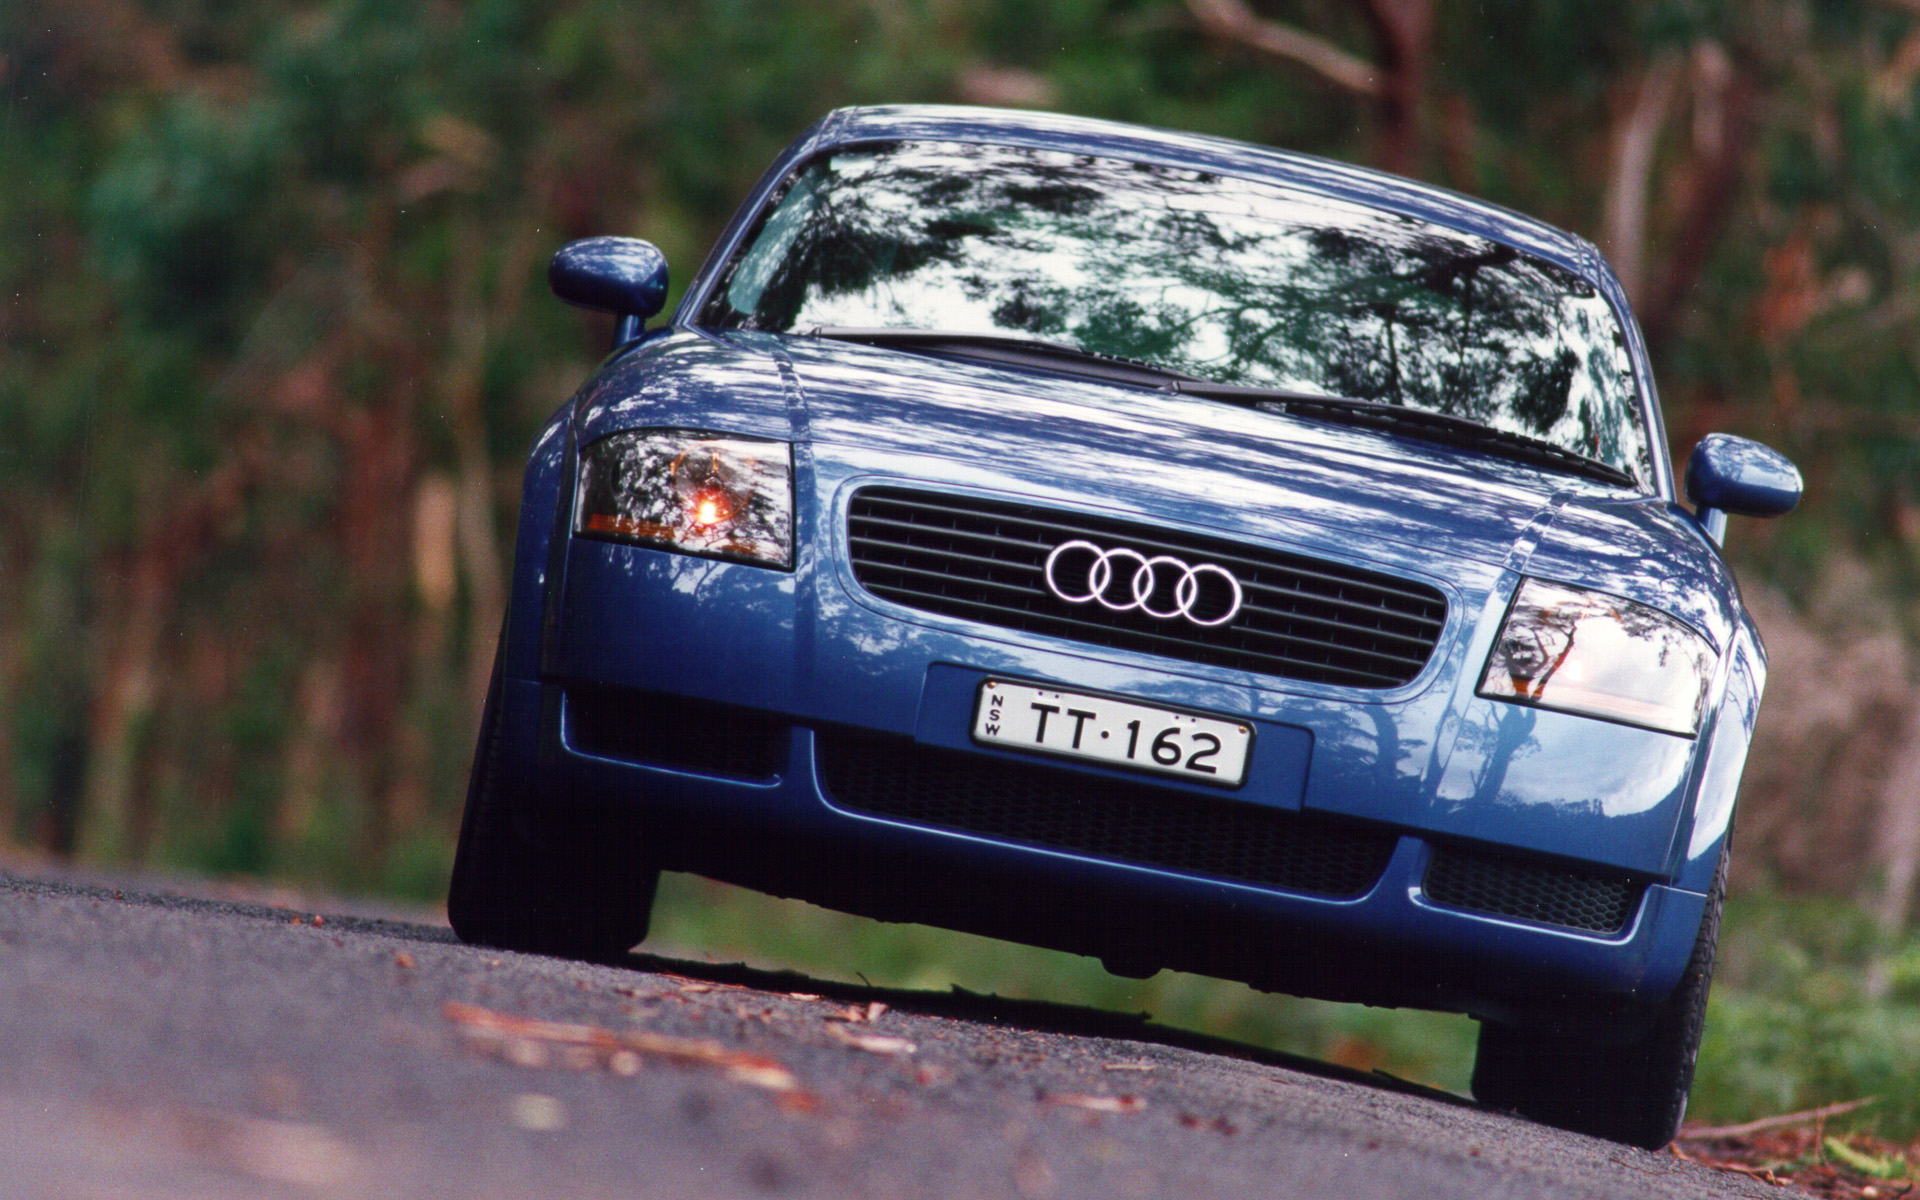 01 2003 n. Audi TT 1999. "Audi" "TT" "1999" LD. "Audi" "TT" "2003" pk. "Audi" "TT" "1999" at.